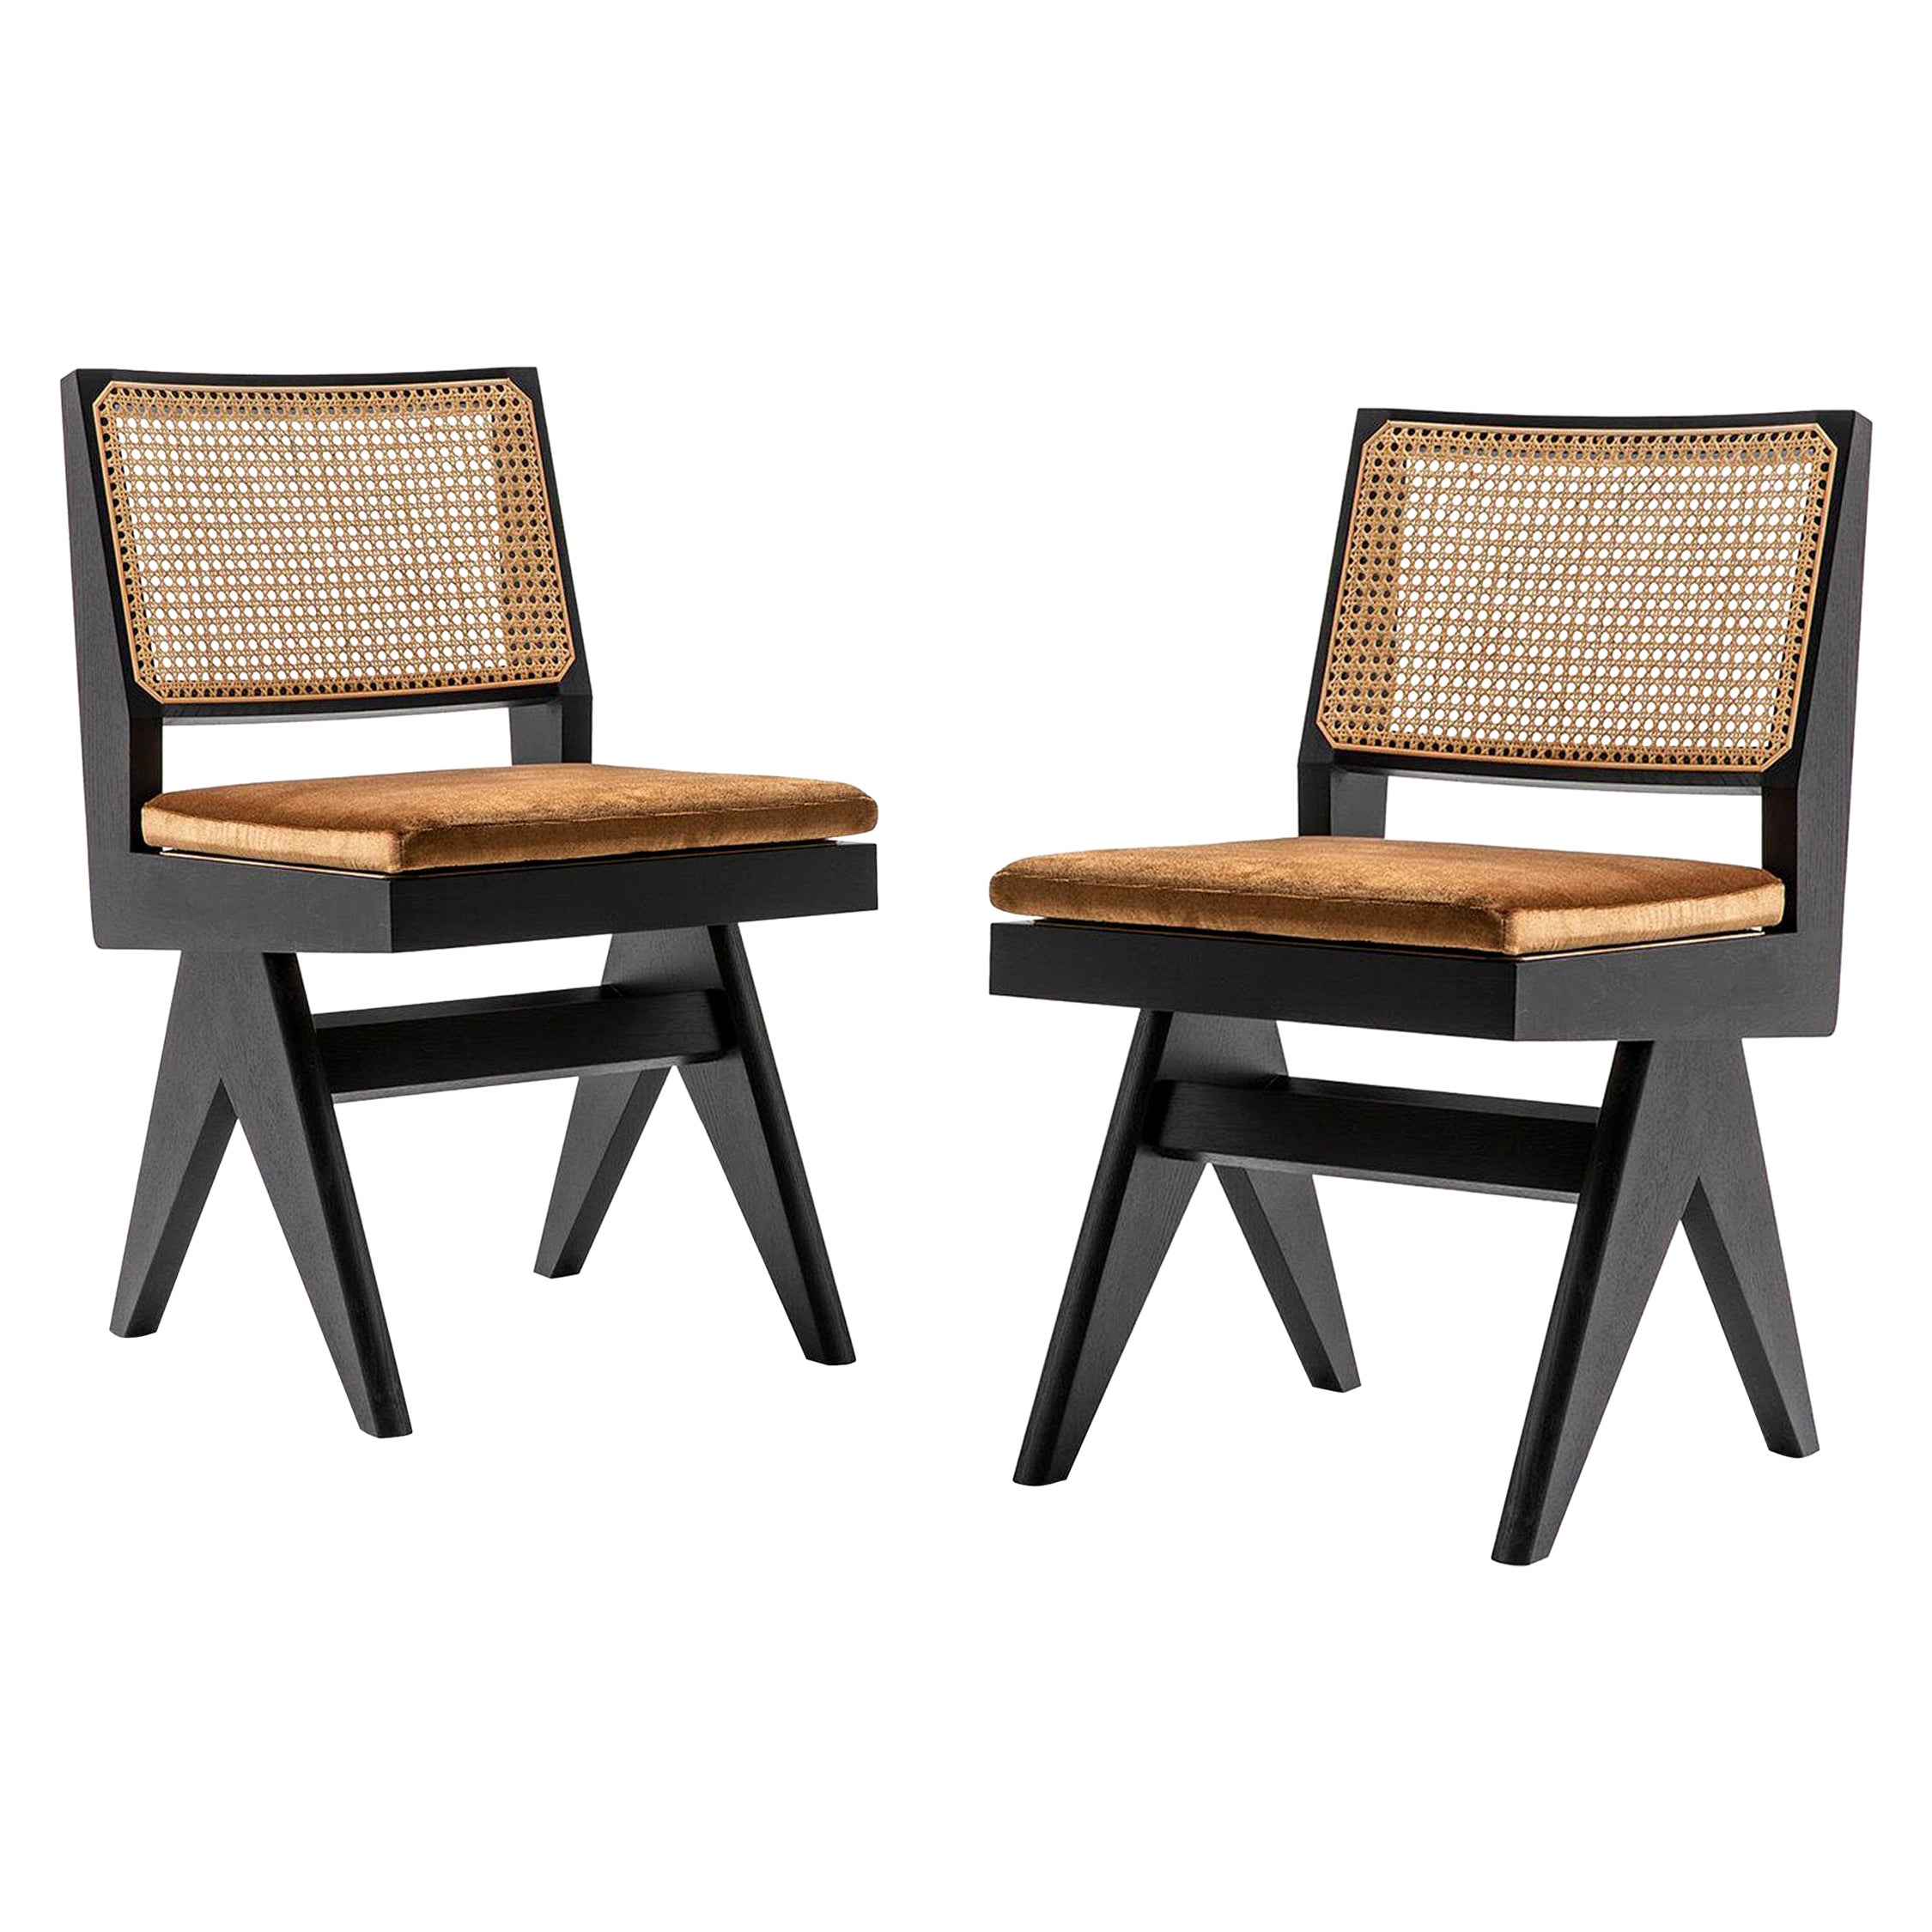 Ensemble de quatre chaises, modèle 055, conçu par Pierre Jeanneret vers 1950, relancé en 2019.
Fabriqué par Cassina en Italie.

Cette chaise est l'une des plus reconnaissables du complexe du Capitole de Chandigarh, que l'on retrouve dans tous les